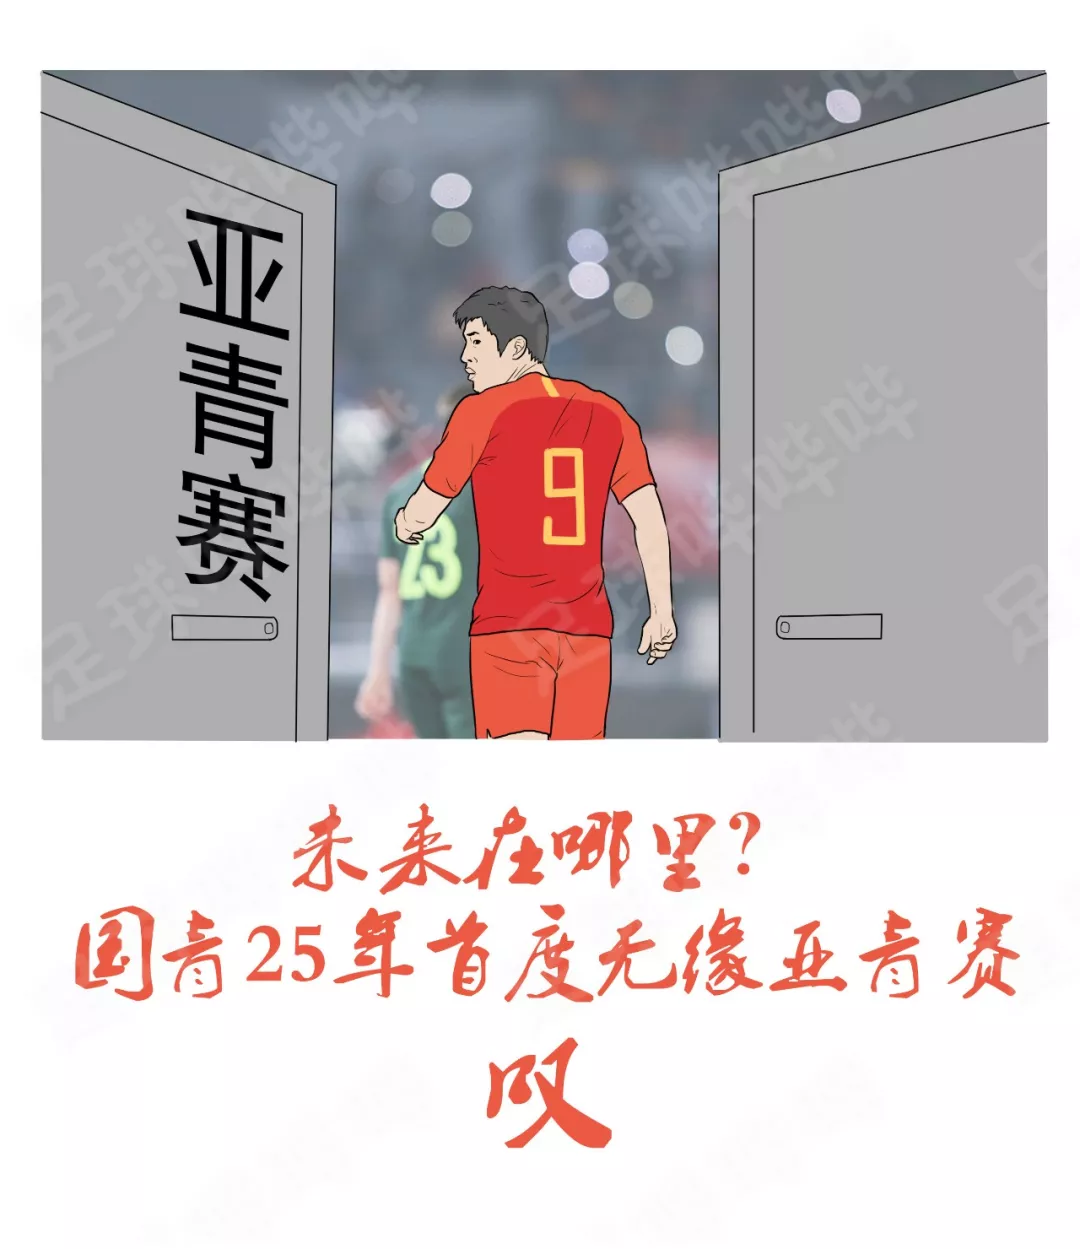 19张图，定格中国足球的2019(17)